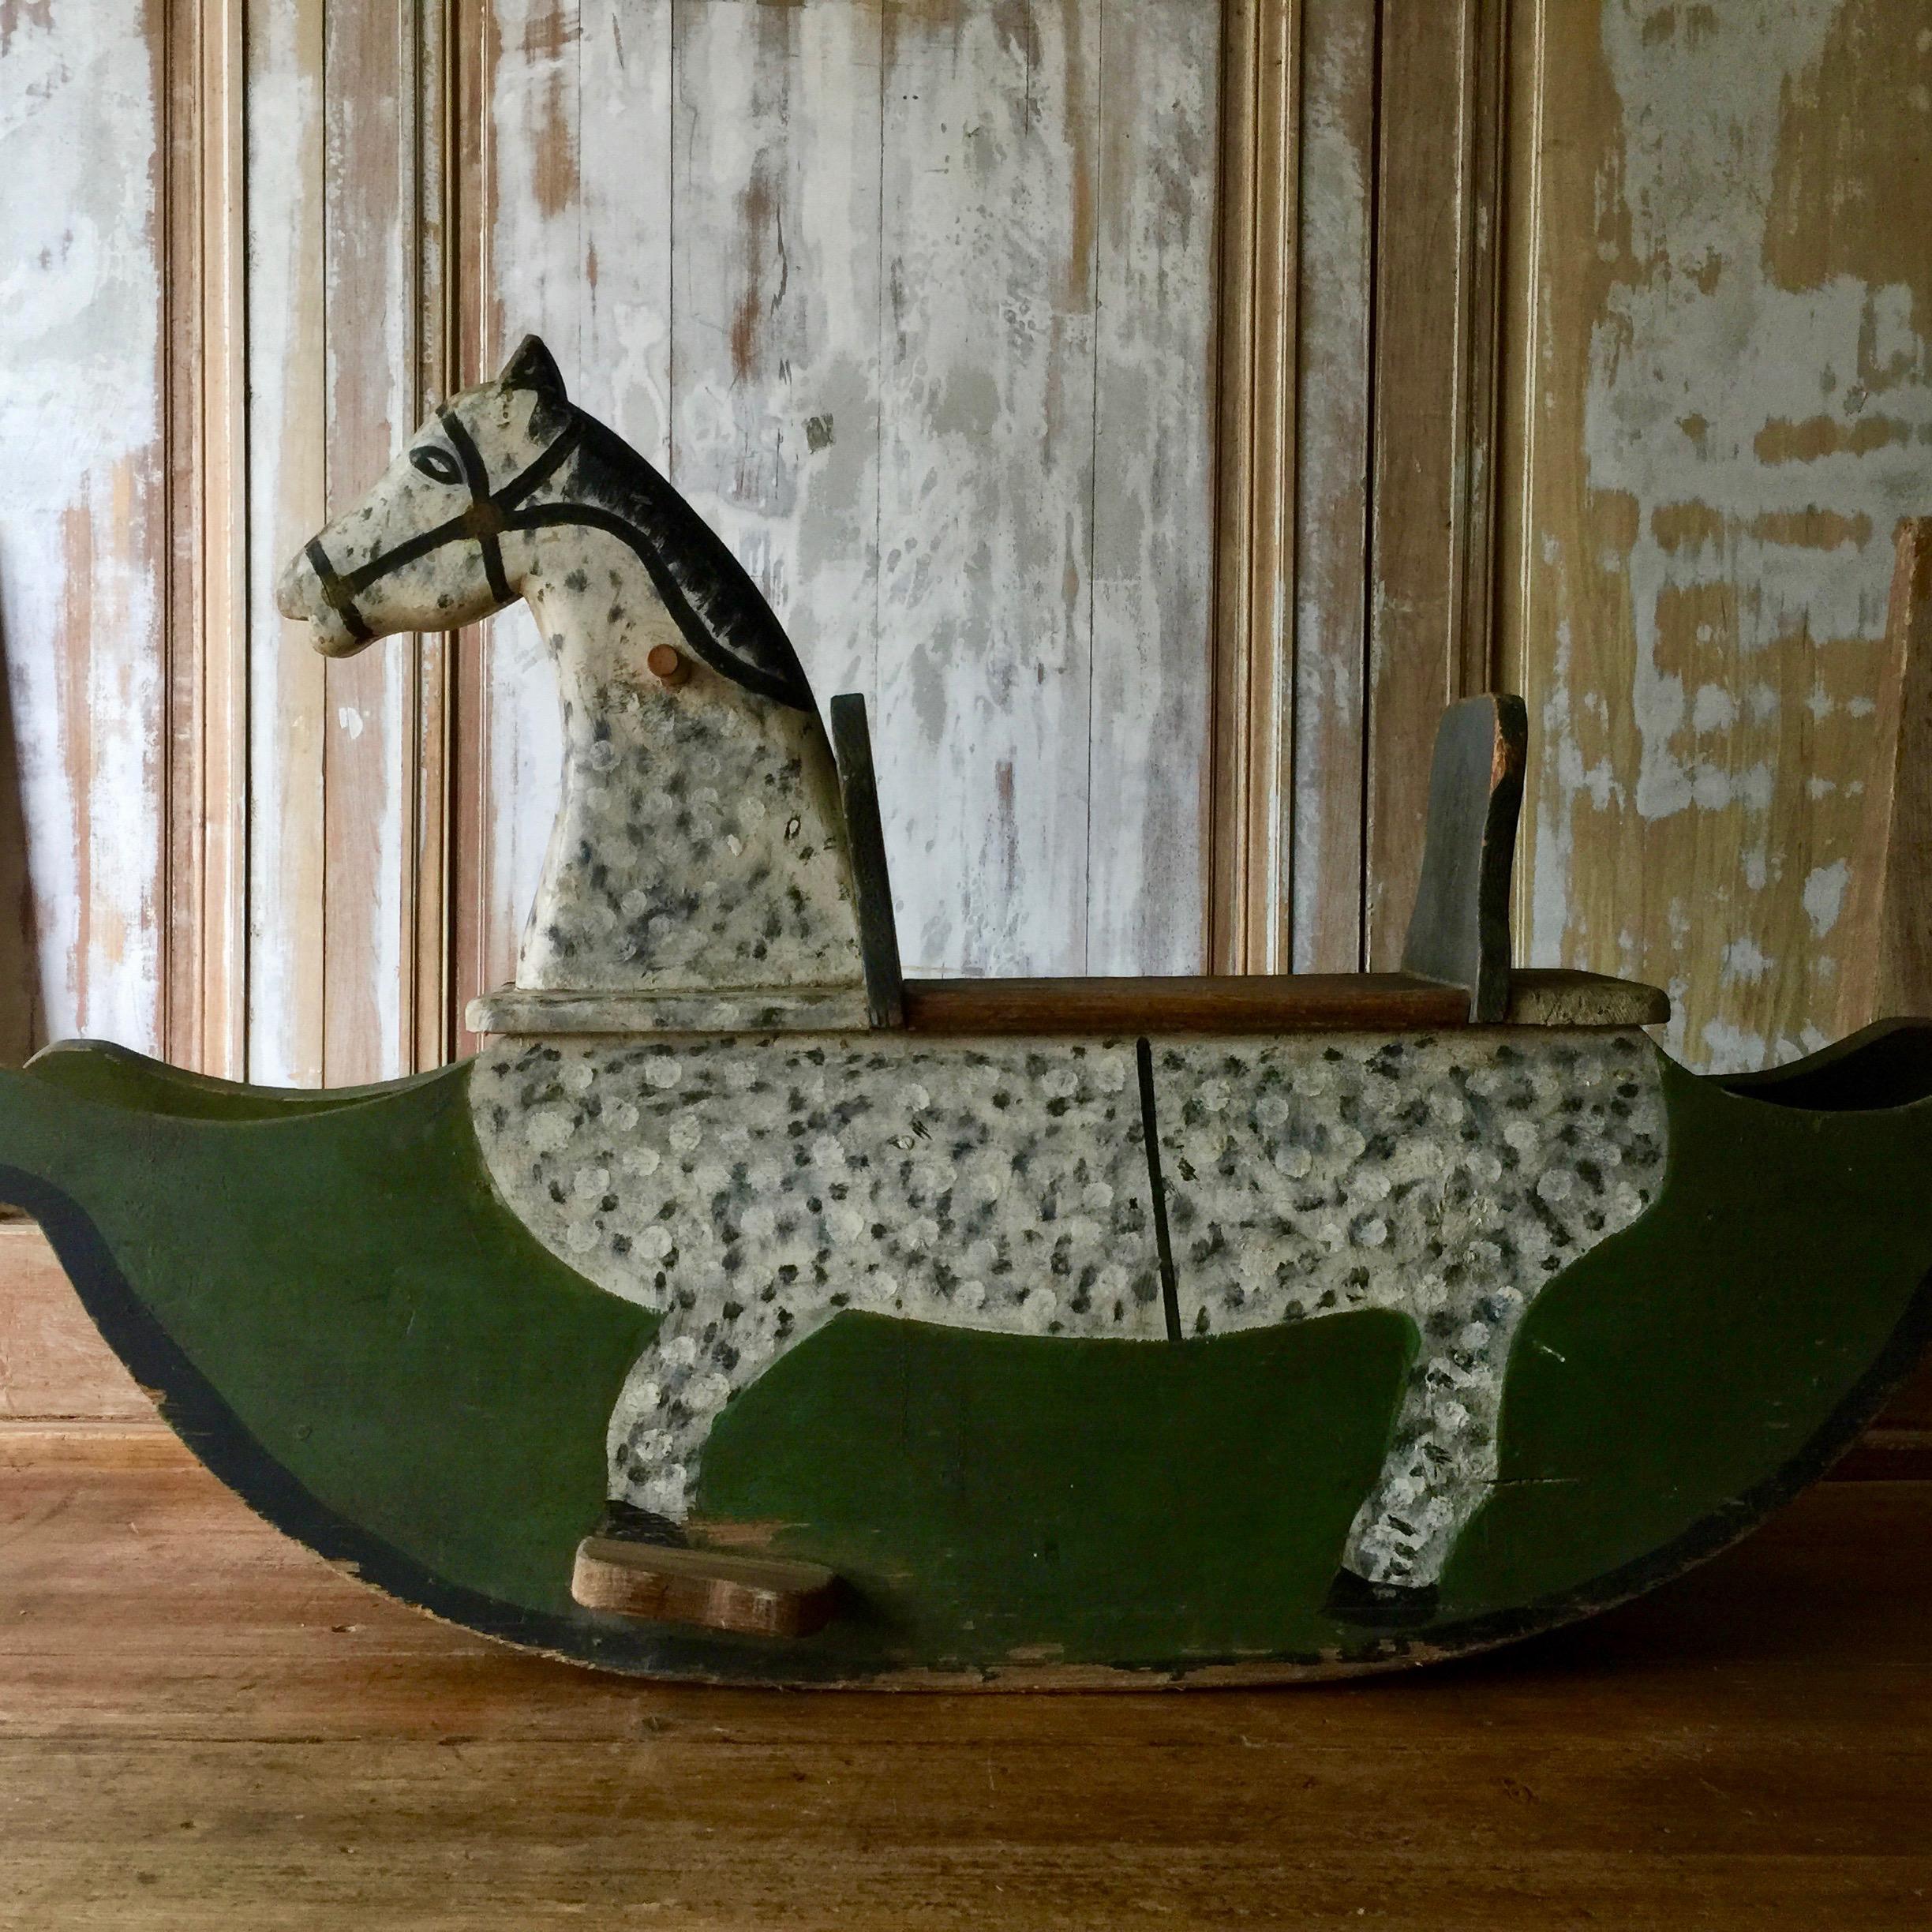 Eine charmante handgefertigte Pferdewippe aus Holz.
Sehr solide für Kinder.
Schweden, um 1900
Überraschende Stücke und Objekte, authentische, dekorative und seltene Gegenstände. Entdecken Sie sie alle.
 